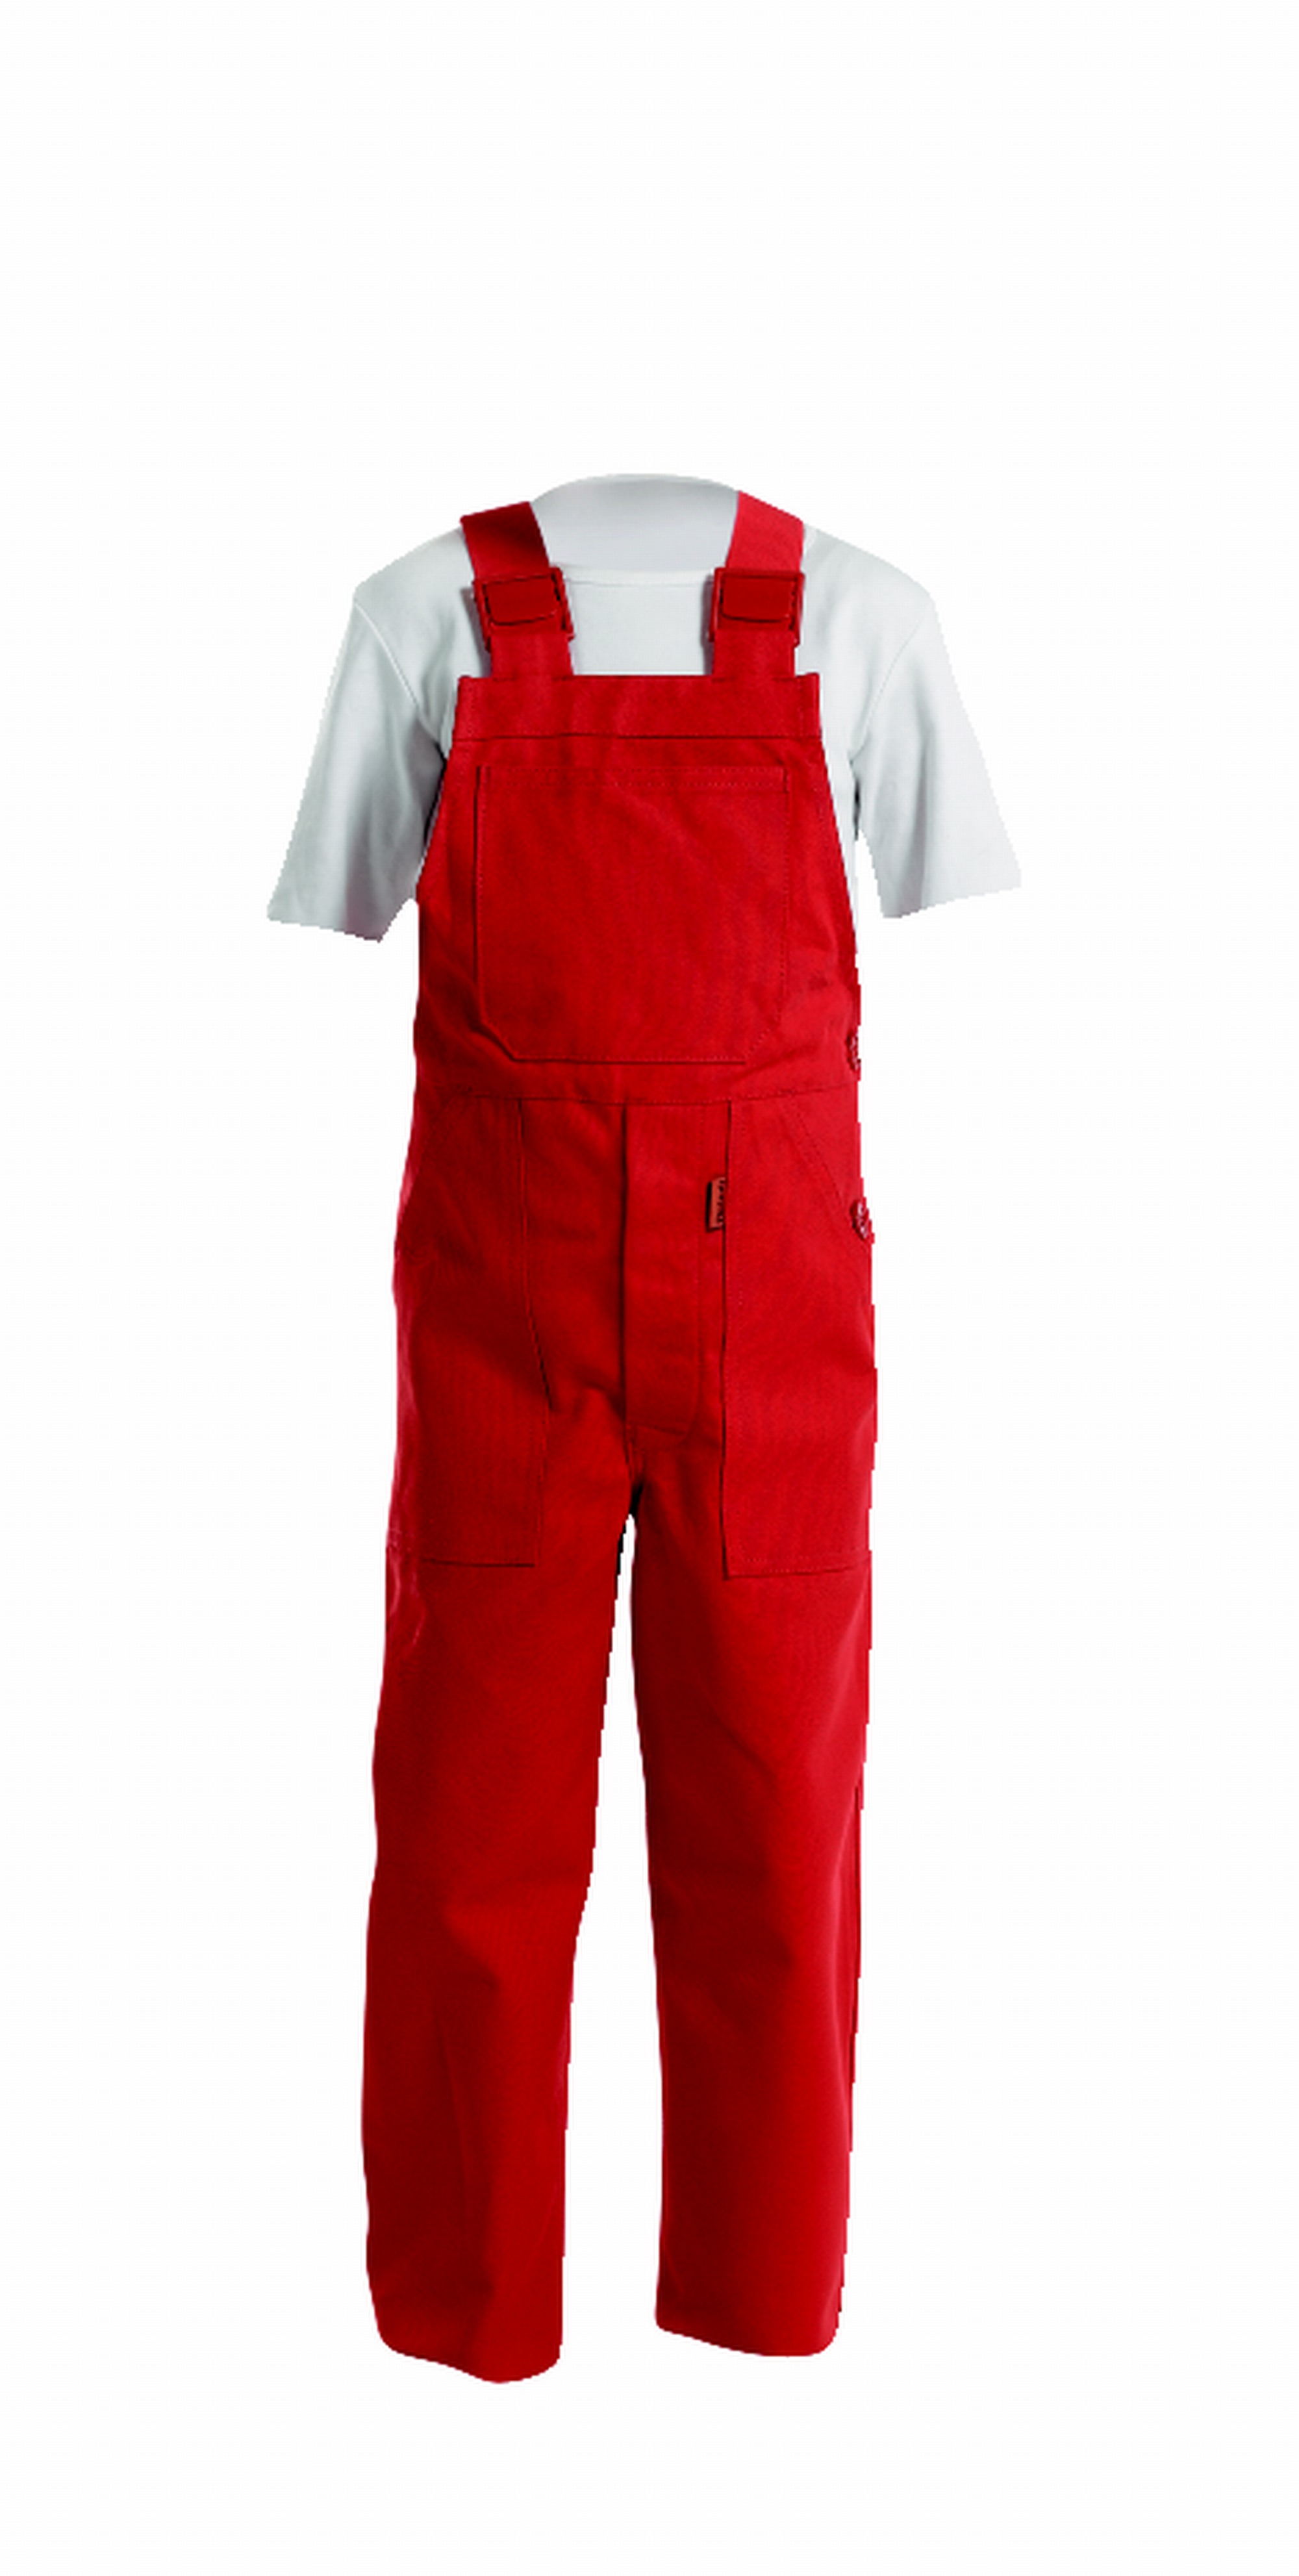 REINDL | Kinder-Latzhose | Arbeitskleidung & Arbeitsschutzartikel von Reindl